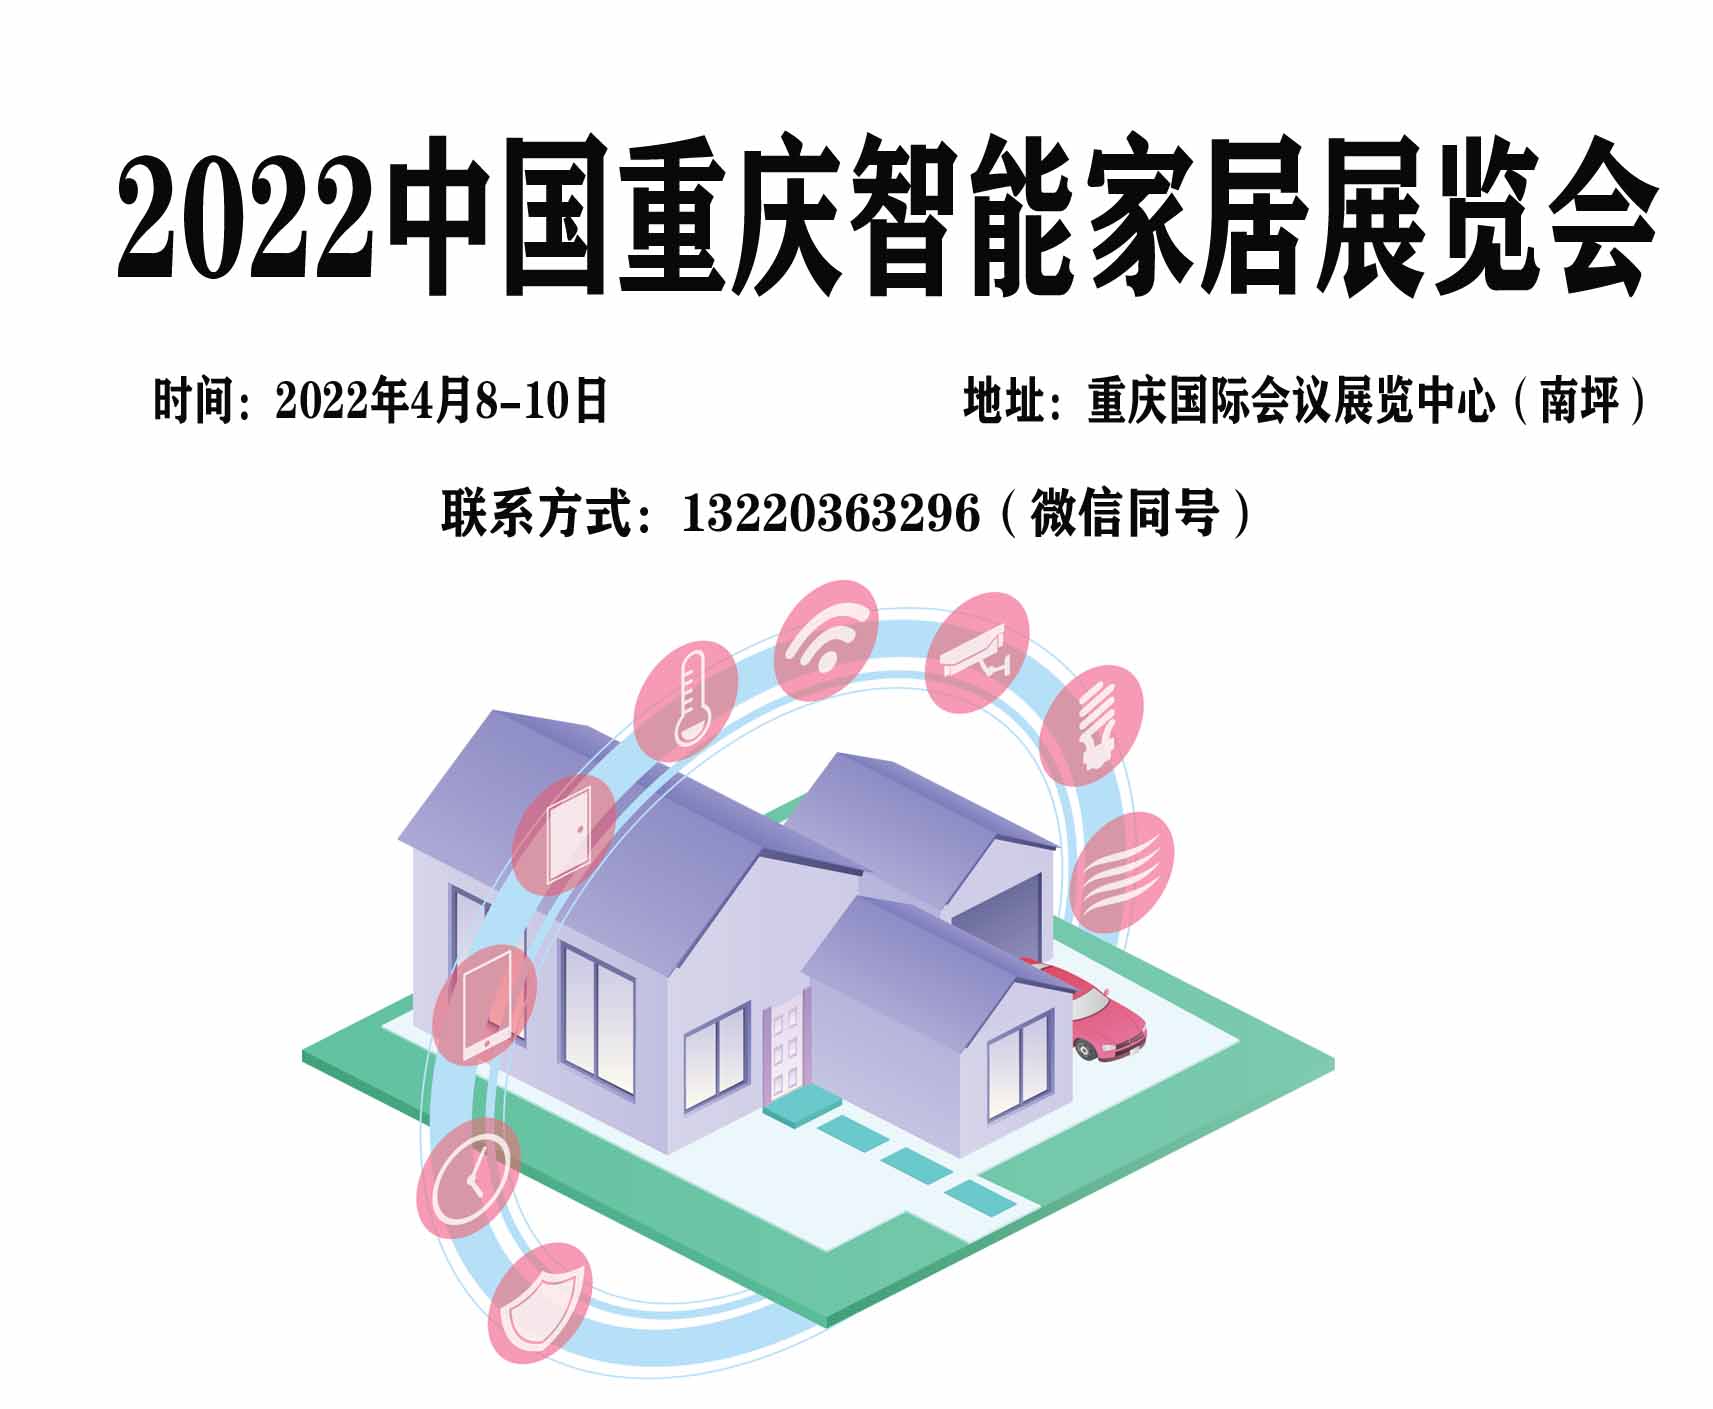 2022中國重慶智能家居博覽會